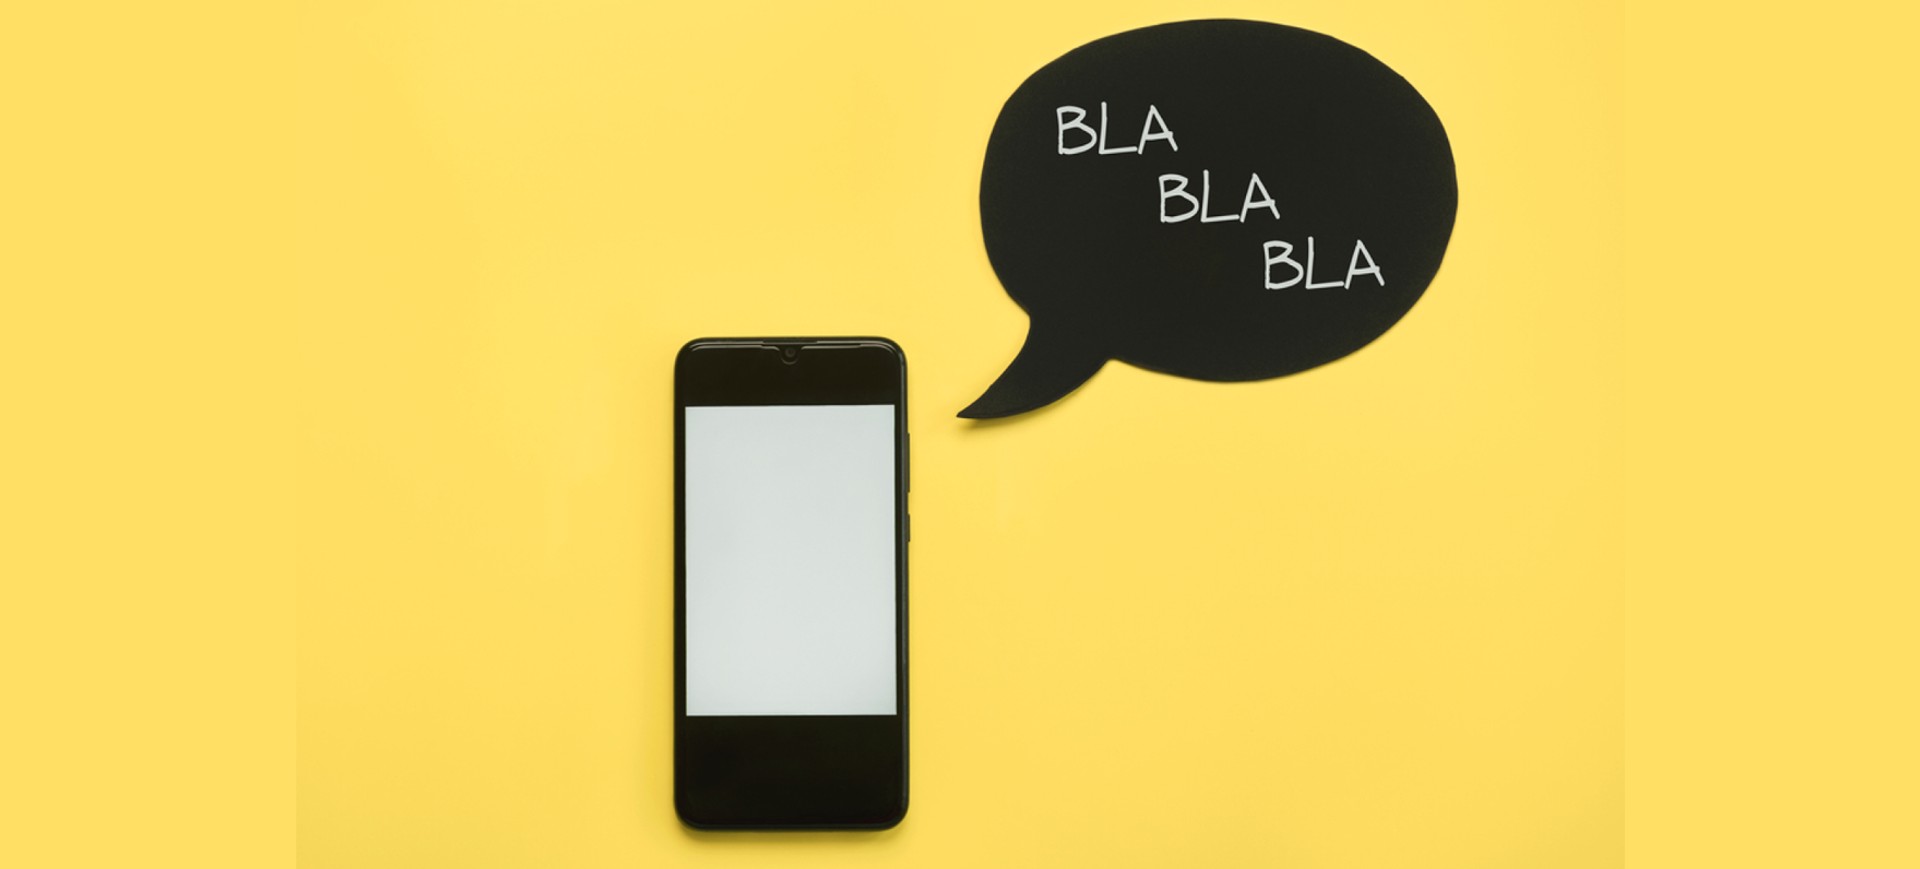 Celular com a tela branca e, ao lado, há o desenho de uma caixa de diálogo preta escrito "blá blá blá", representando a mesangem de texto SMS